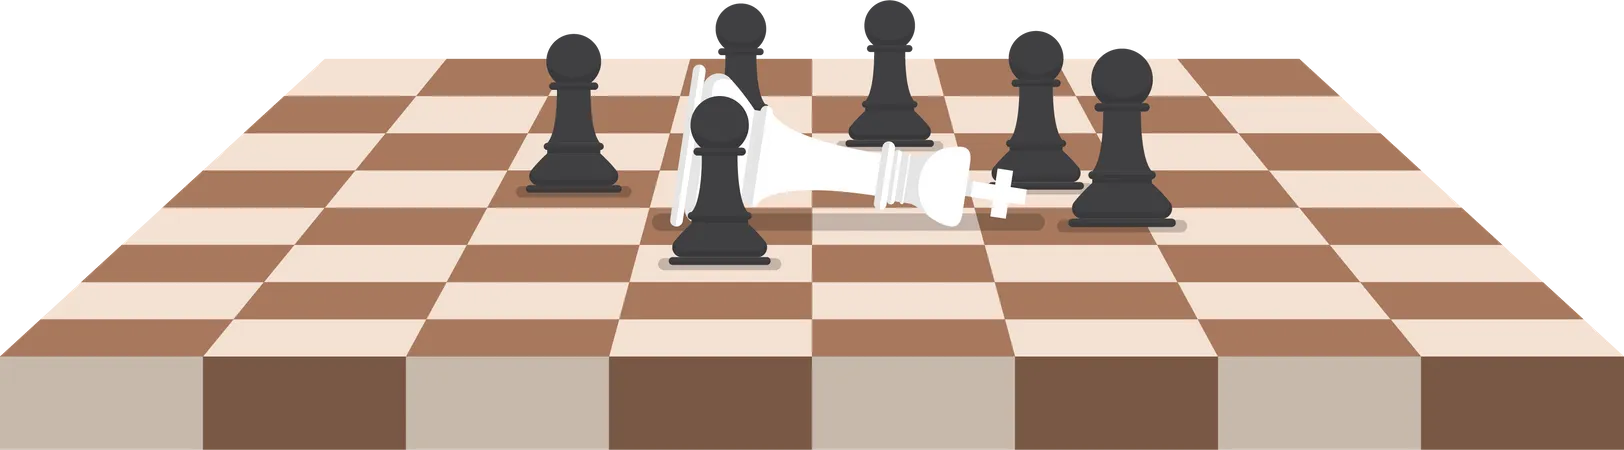 El grupo de peones de ajedrez negros derrota al rey blanco.  Ilustración